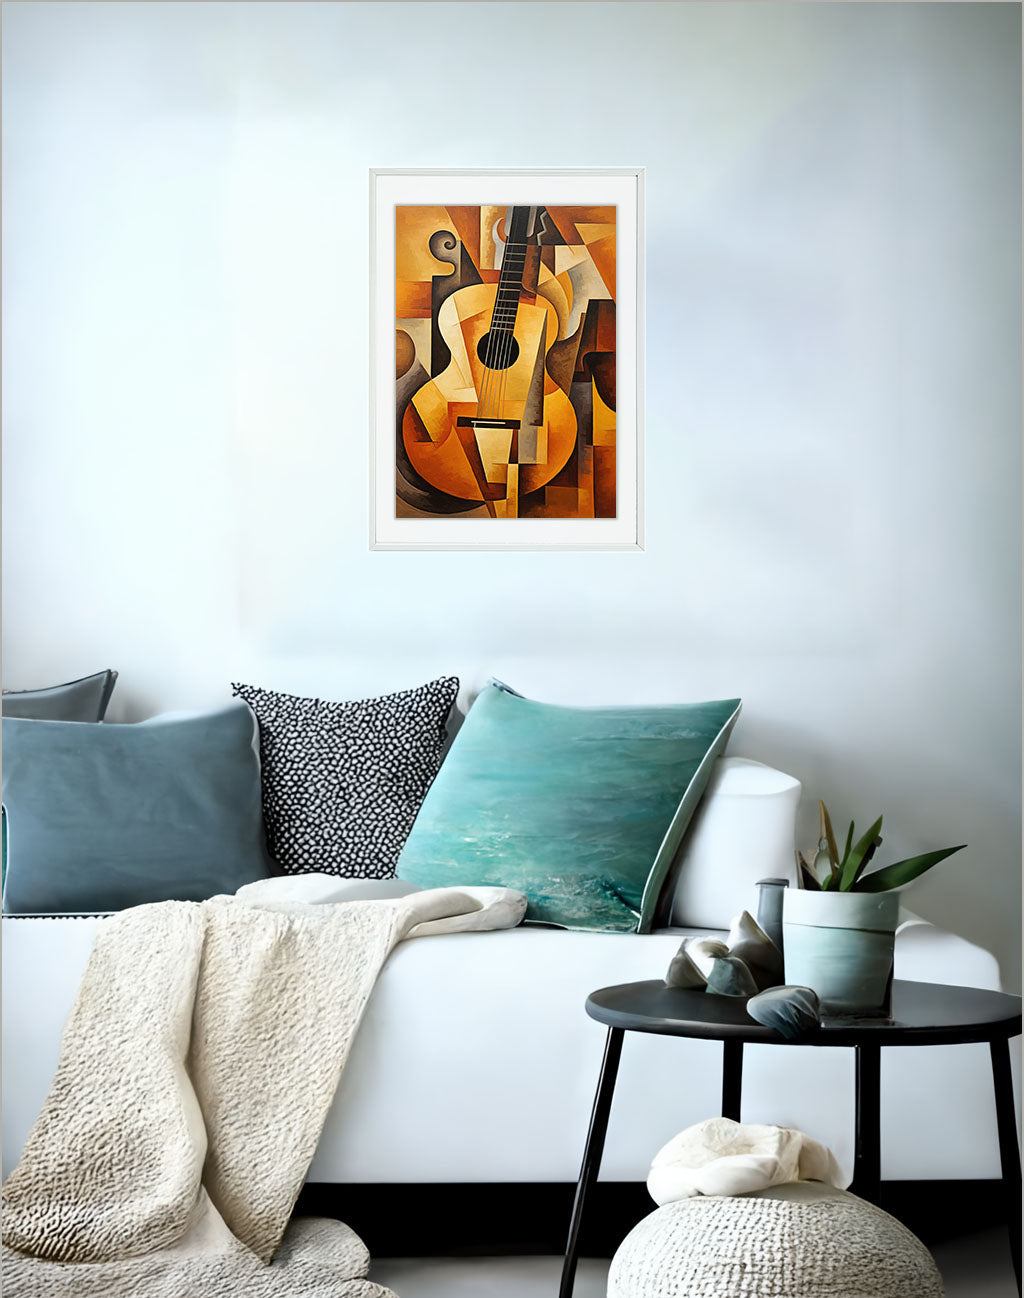 ギターのアートポスター:guitar_9660 / 音楽・芸術__のポスター画像ソファ近くに設置したイメージ